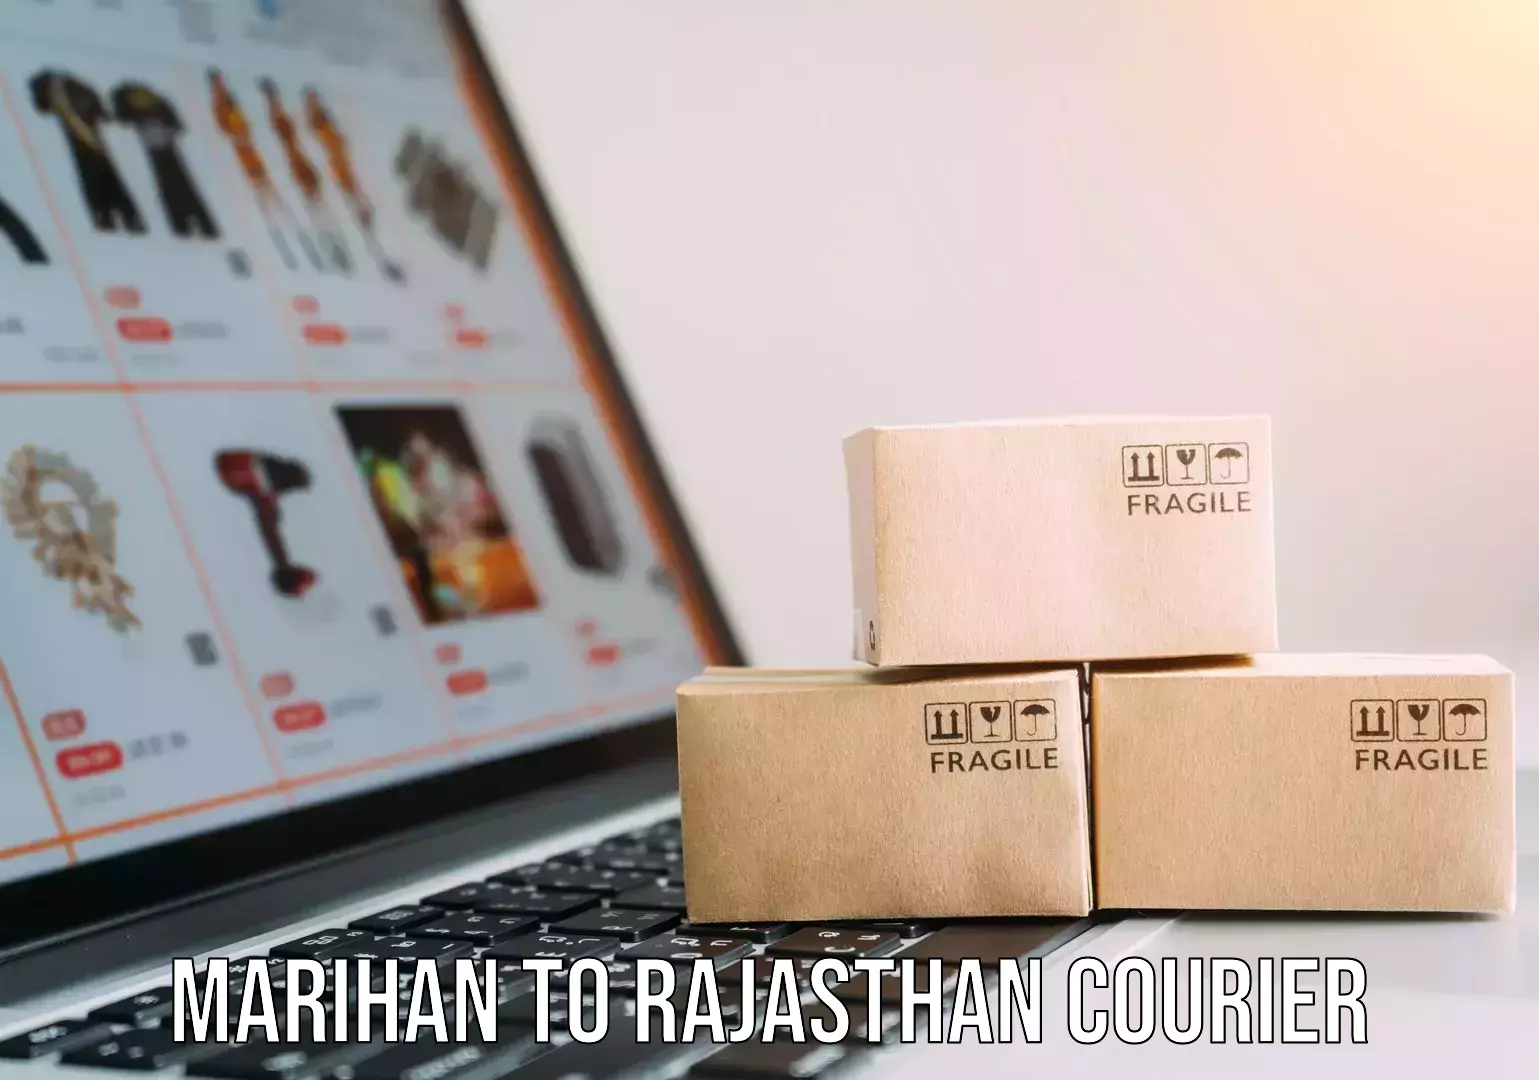 Furniture moving service Marihan to Rajasthan